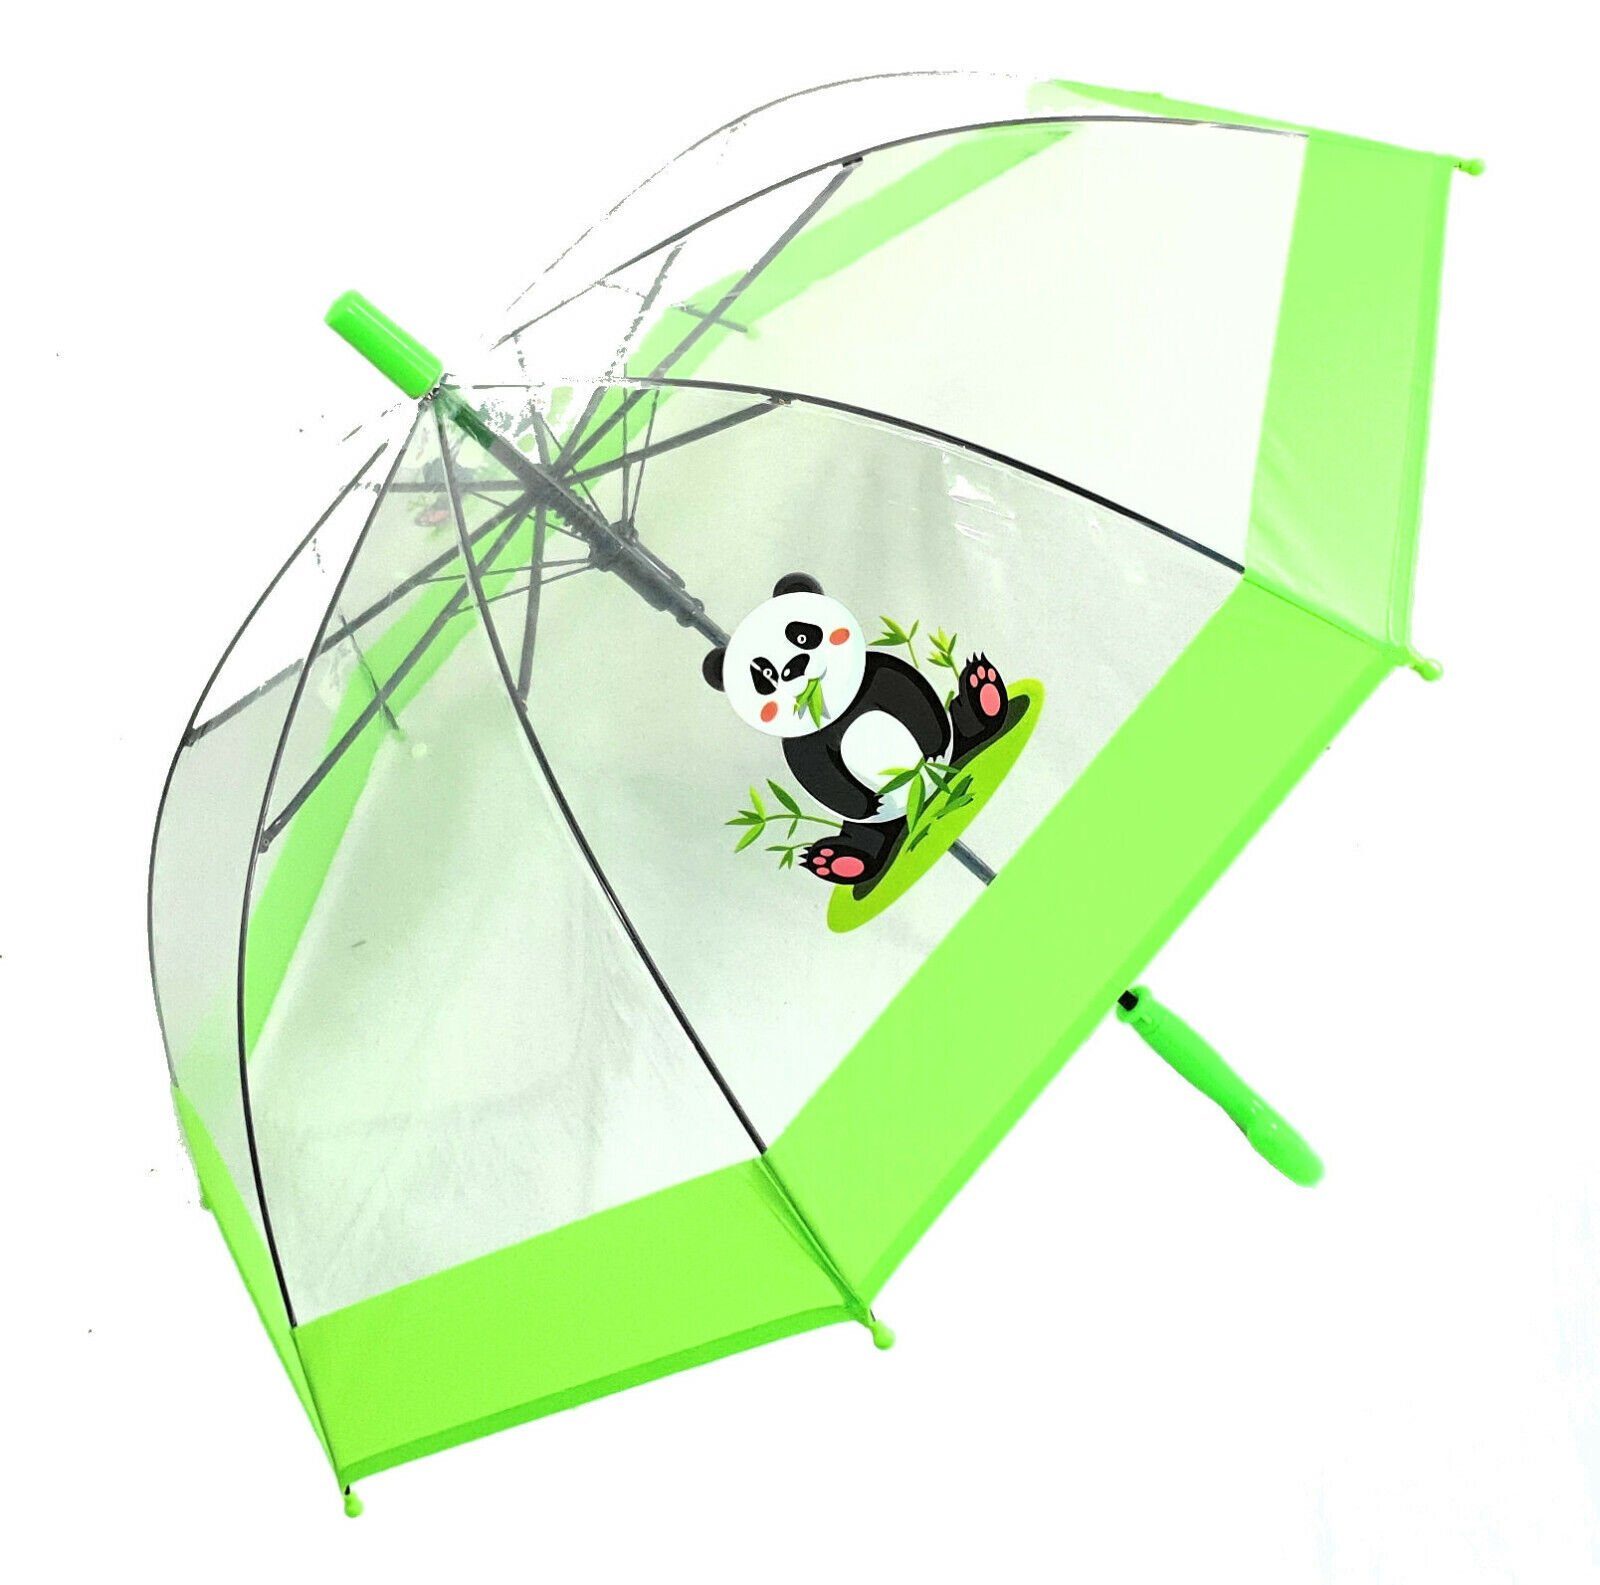 süßer Stockregenschirm Automatik, Kinder transparent grün mit tranparent Neuser Dr. Regenschirm Panda durchsichtig